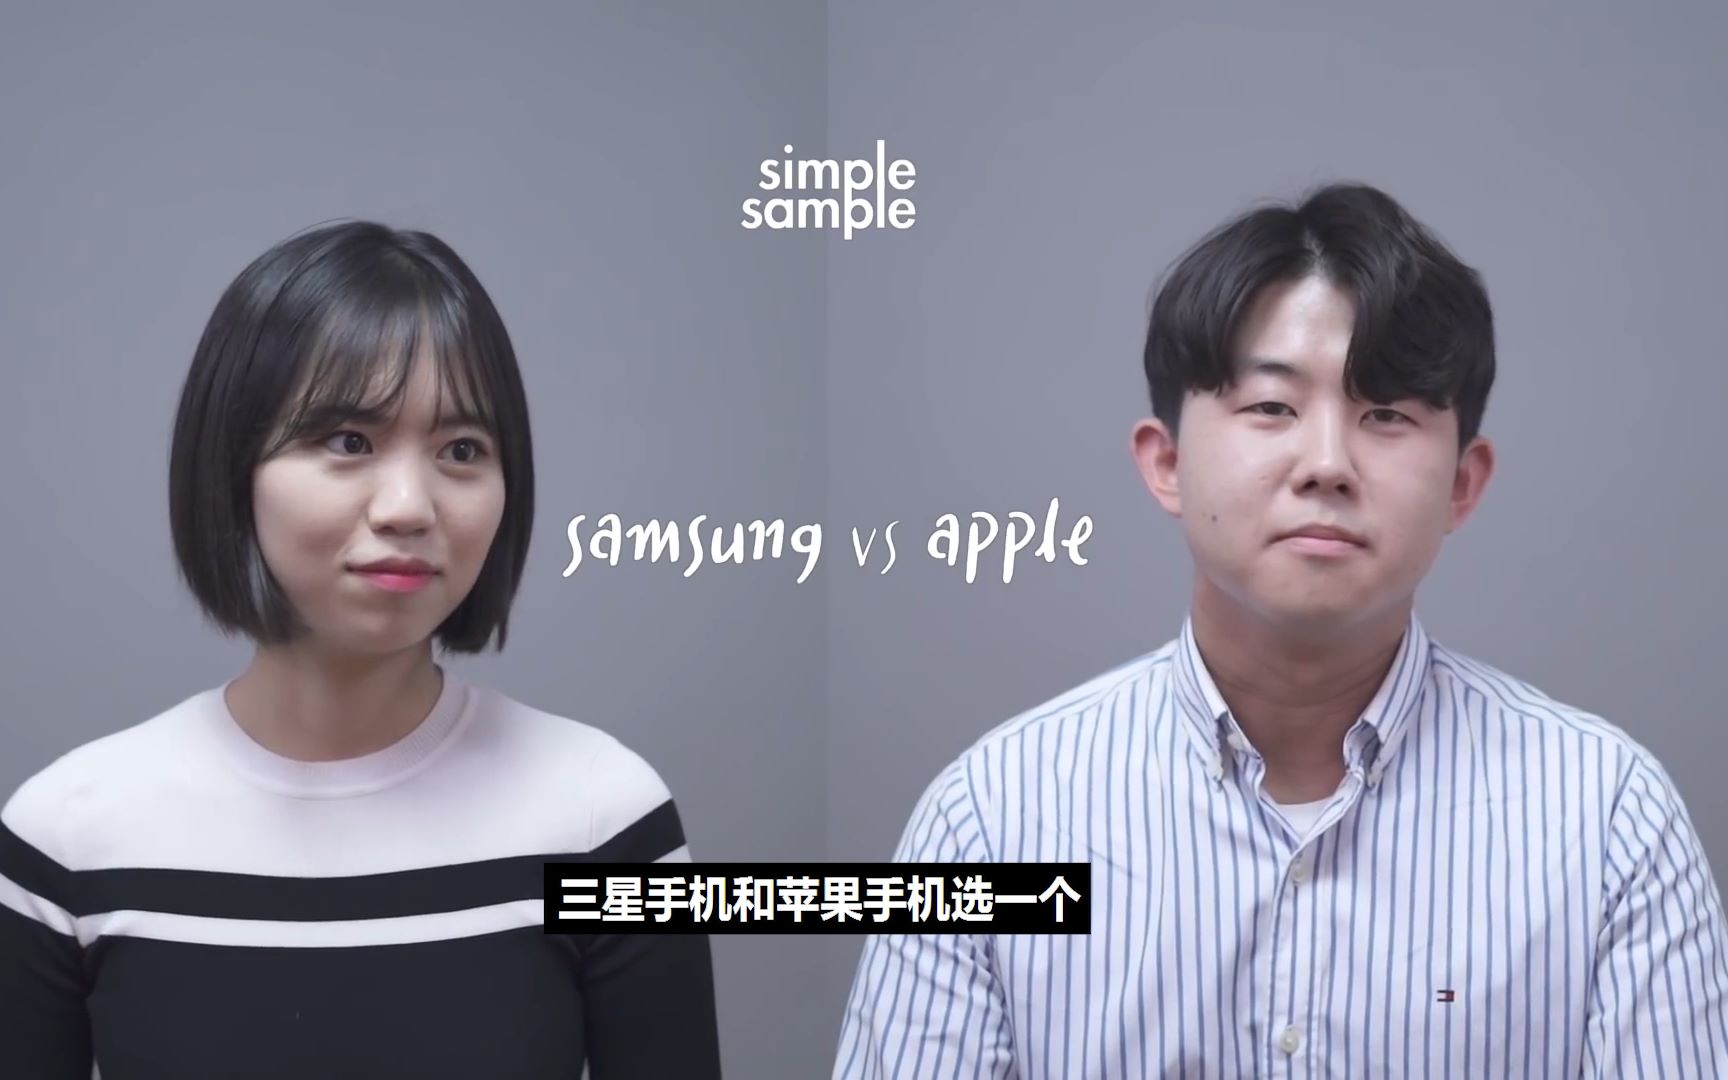 【中字】韩国人更喜欢三星还是苹果？采访100位韩国人的结果是?